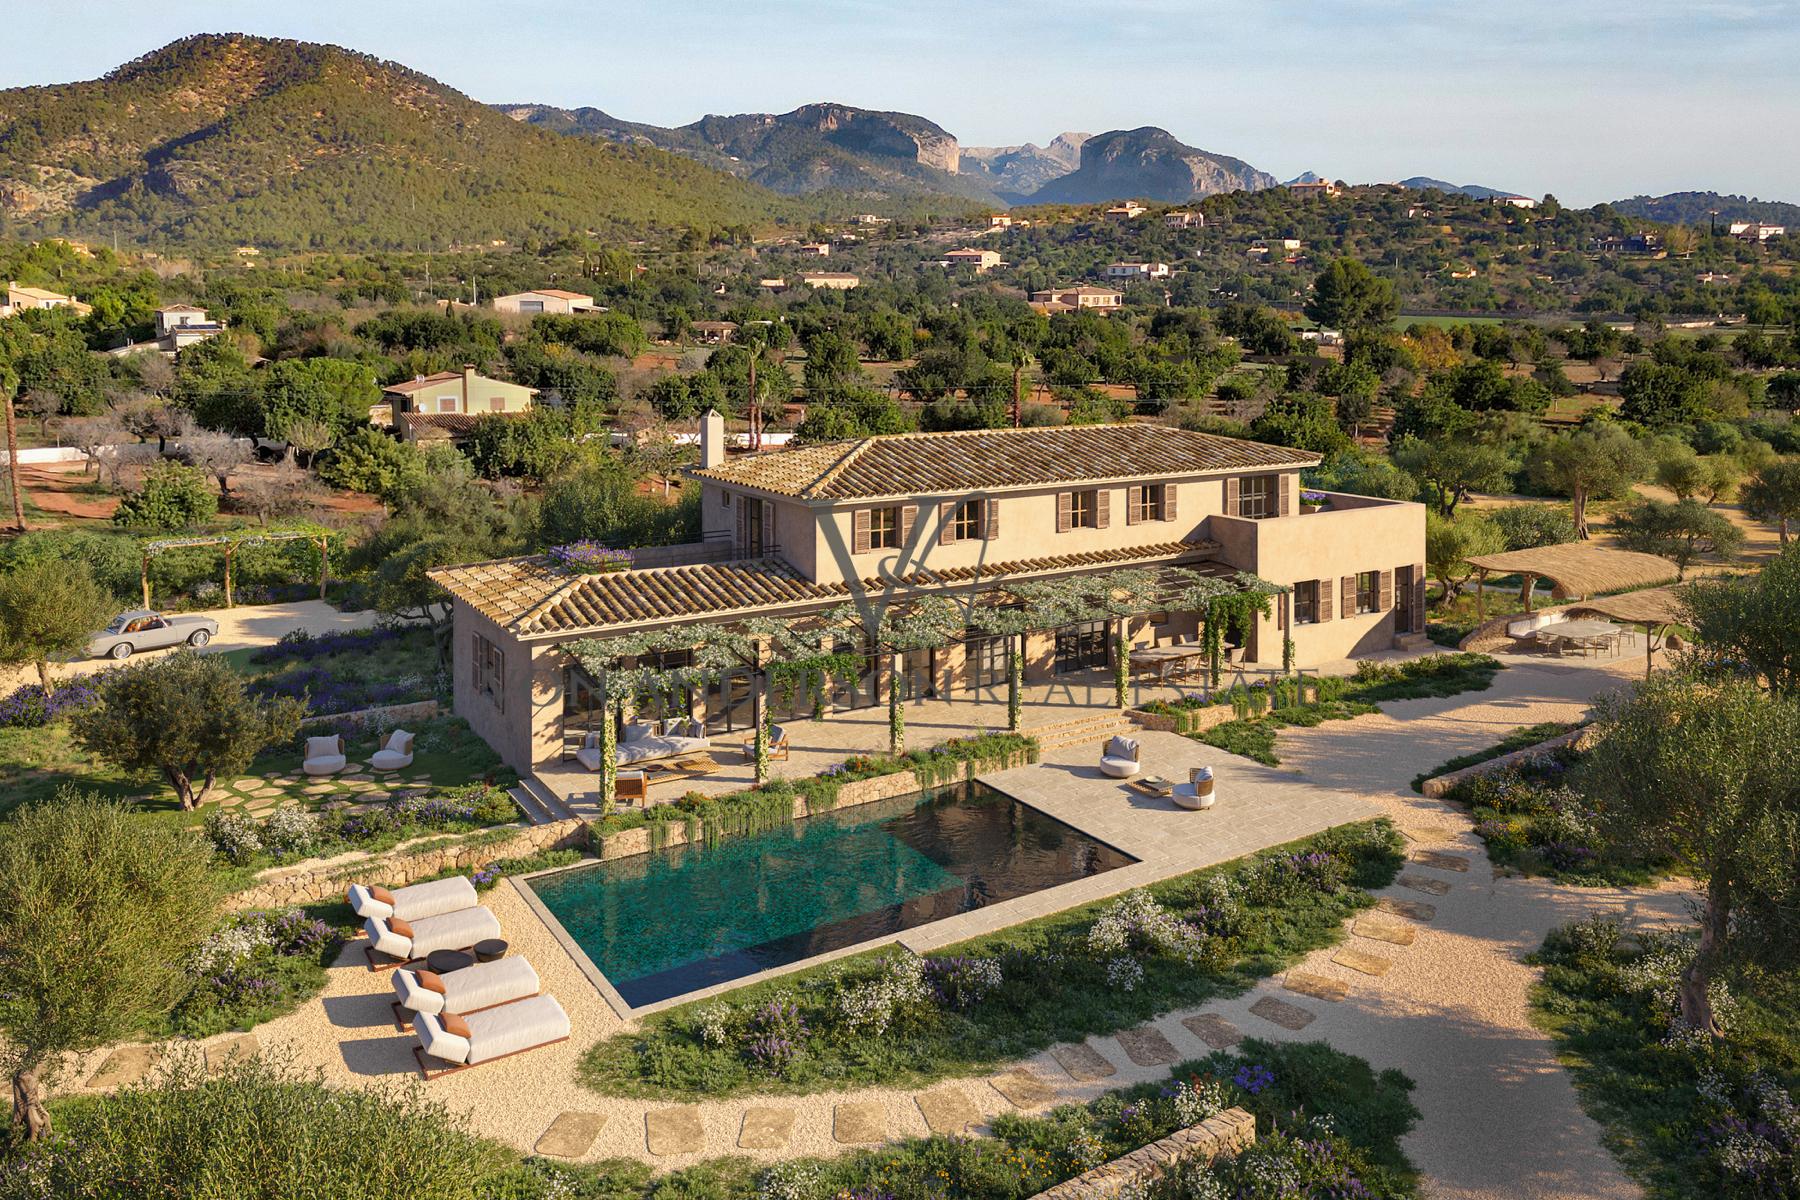 Impressive New Build Villa Project Situated in Picturesque Santa Maria, ref. VA1031, for sale in Mallorca by Von Anderson Real Estate